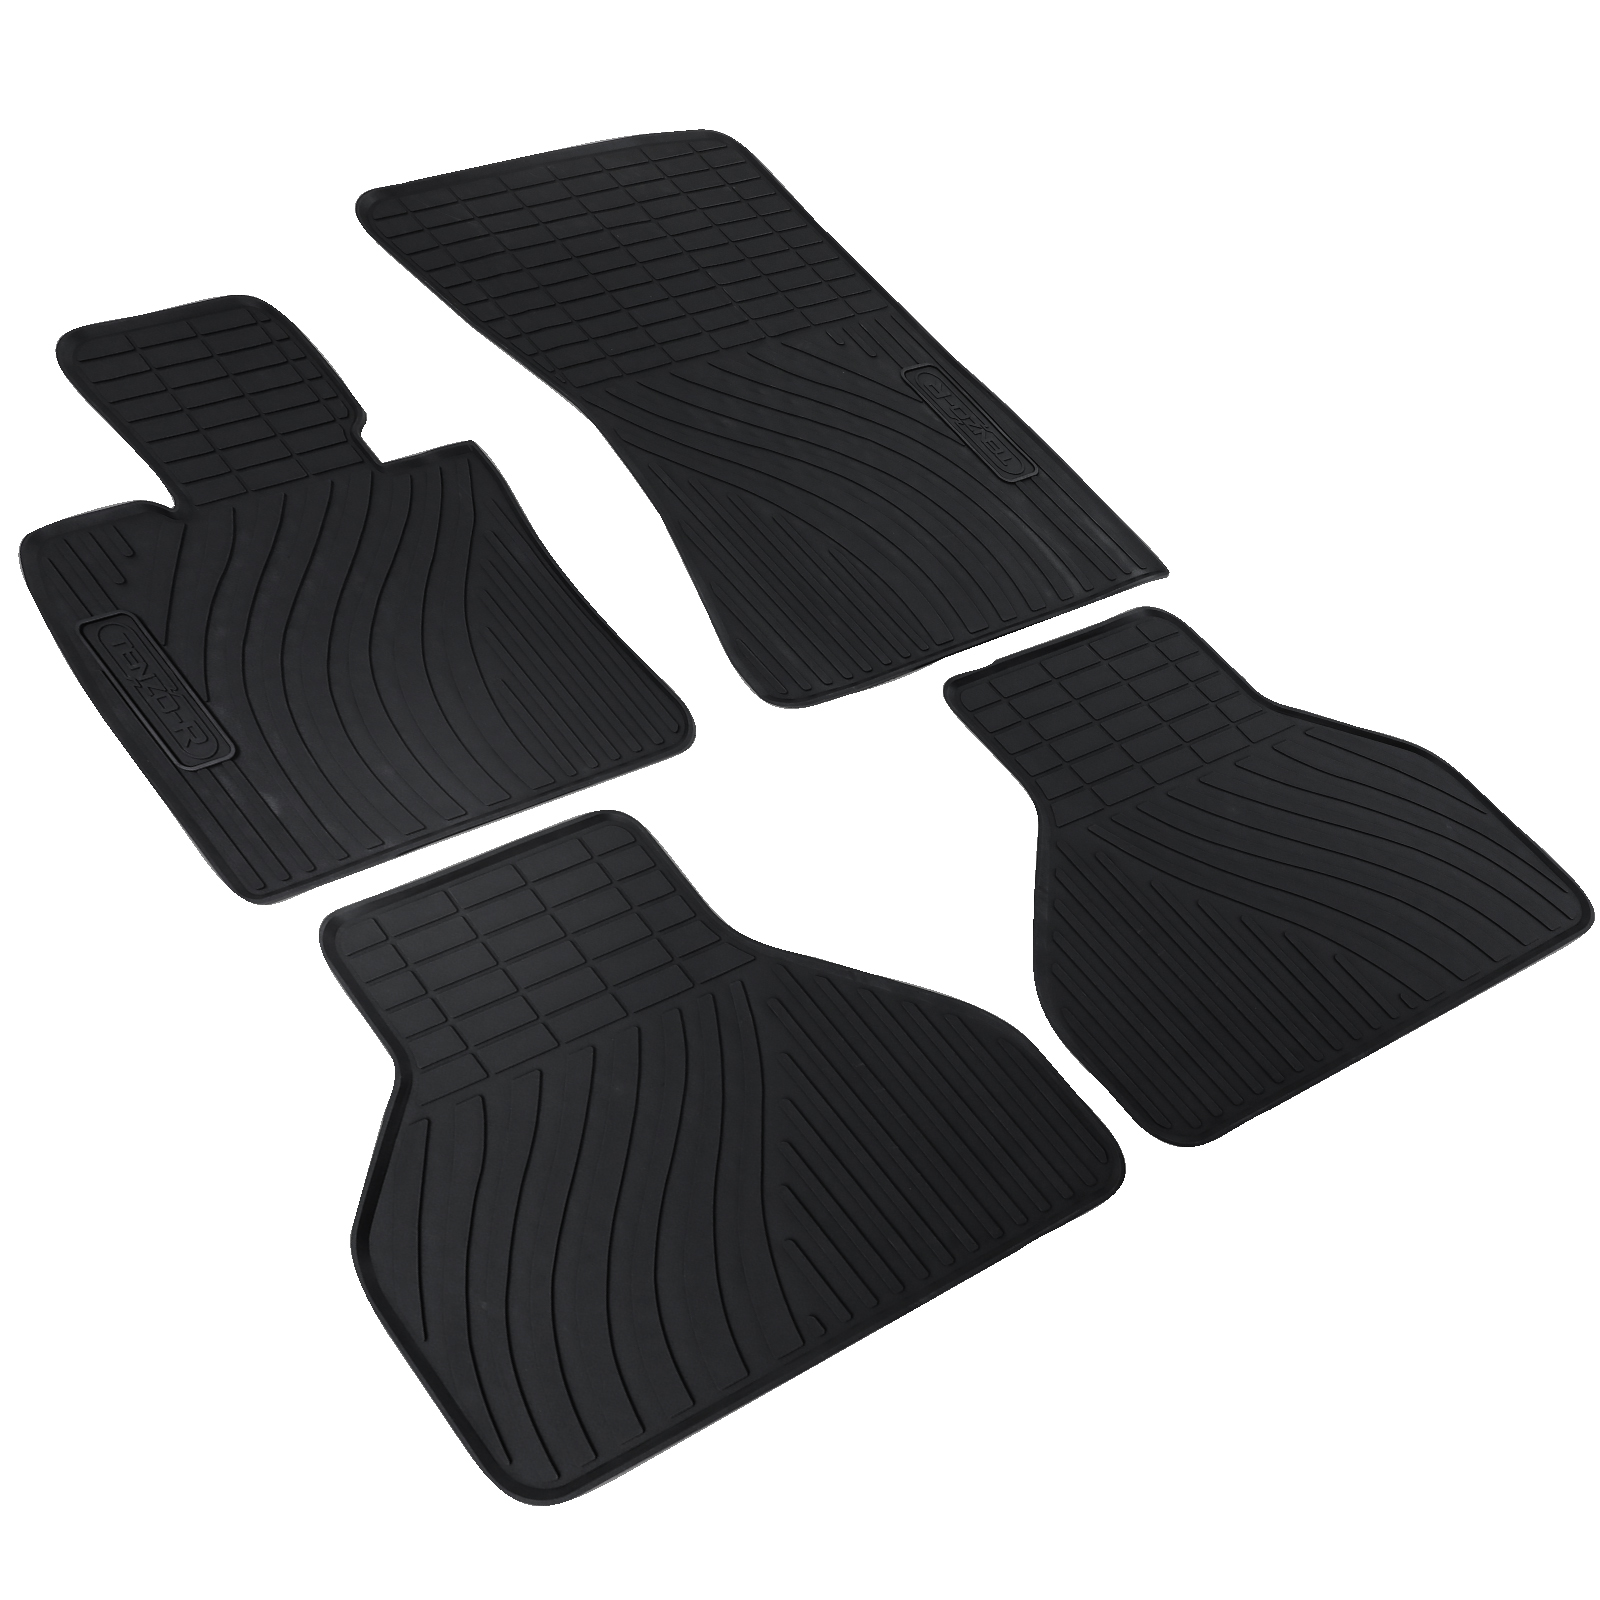 Auto Gummi Fußmatten Schwarz Premium Set passend für BMW X5 E70 X6 E71  kaufen